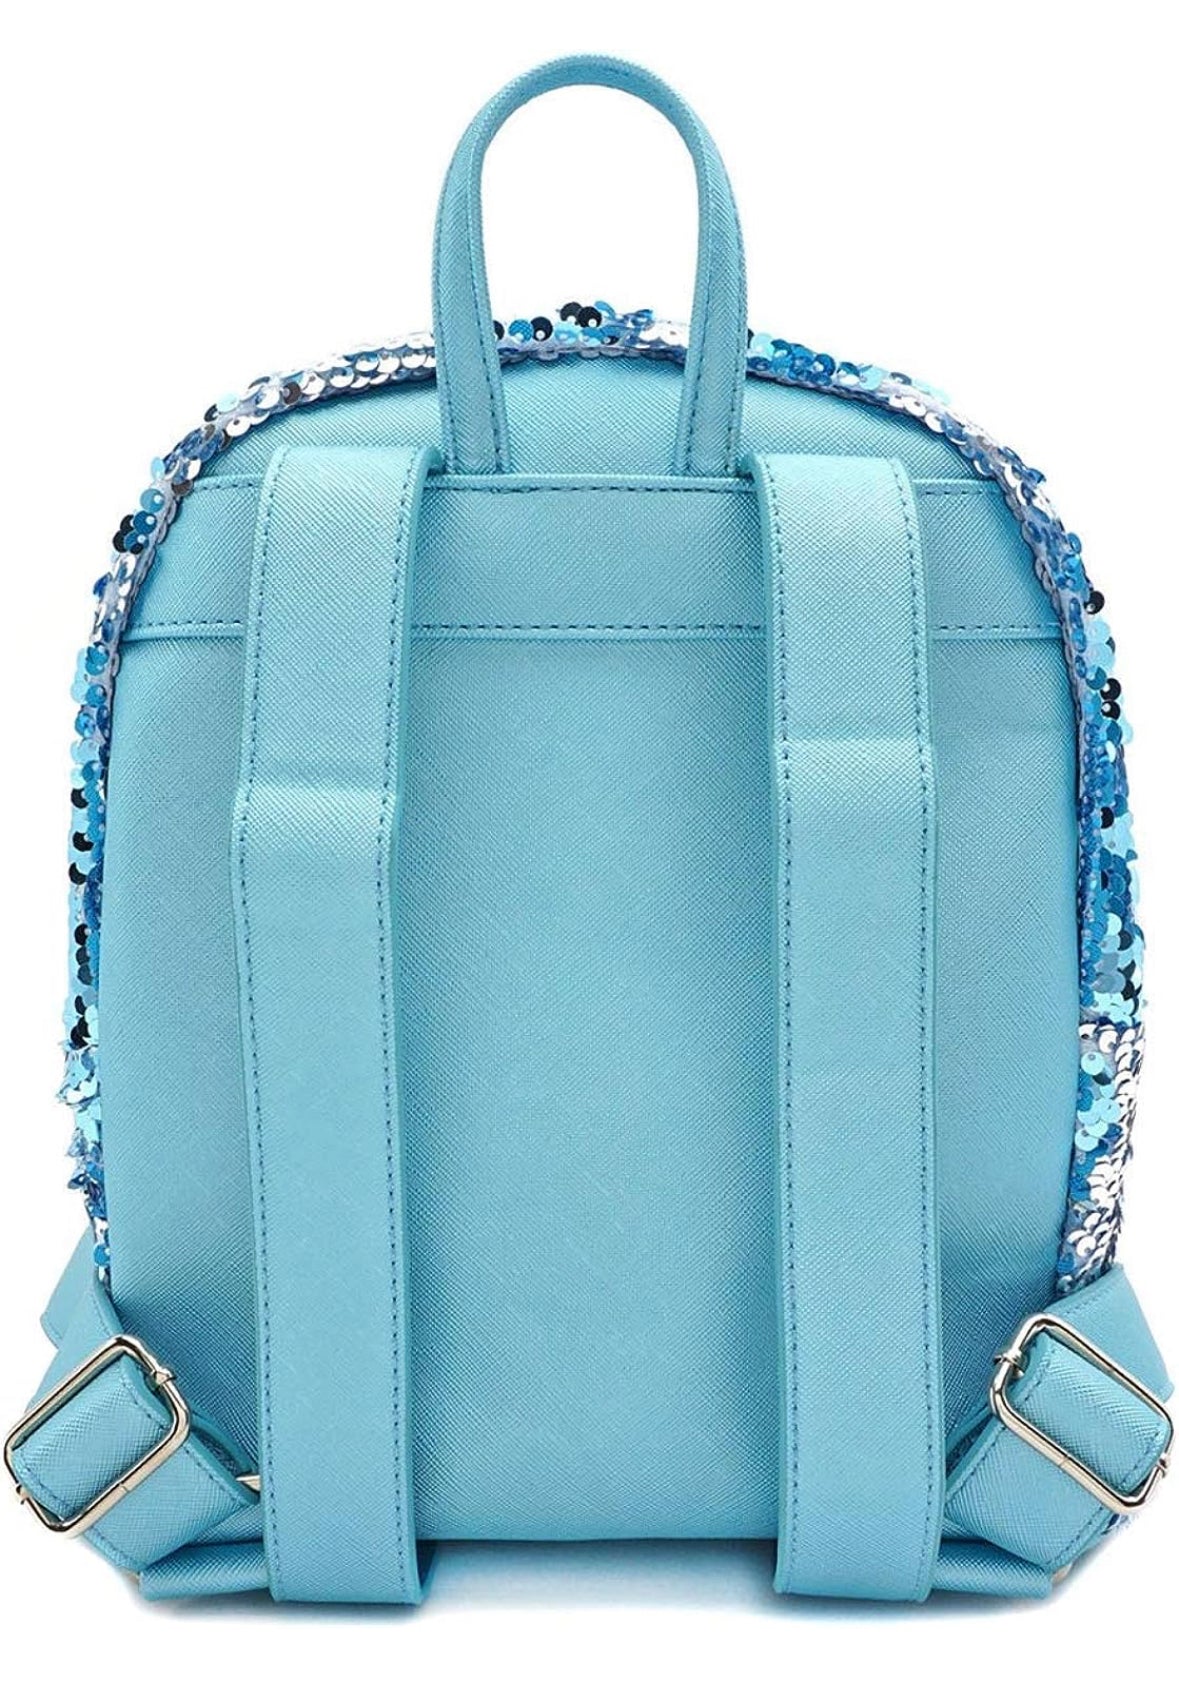 Loungefly Disney Frozen Elsa Reversible Sequin Mini Backpack